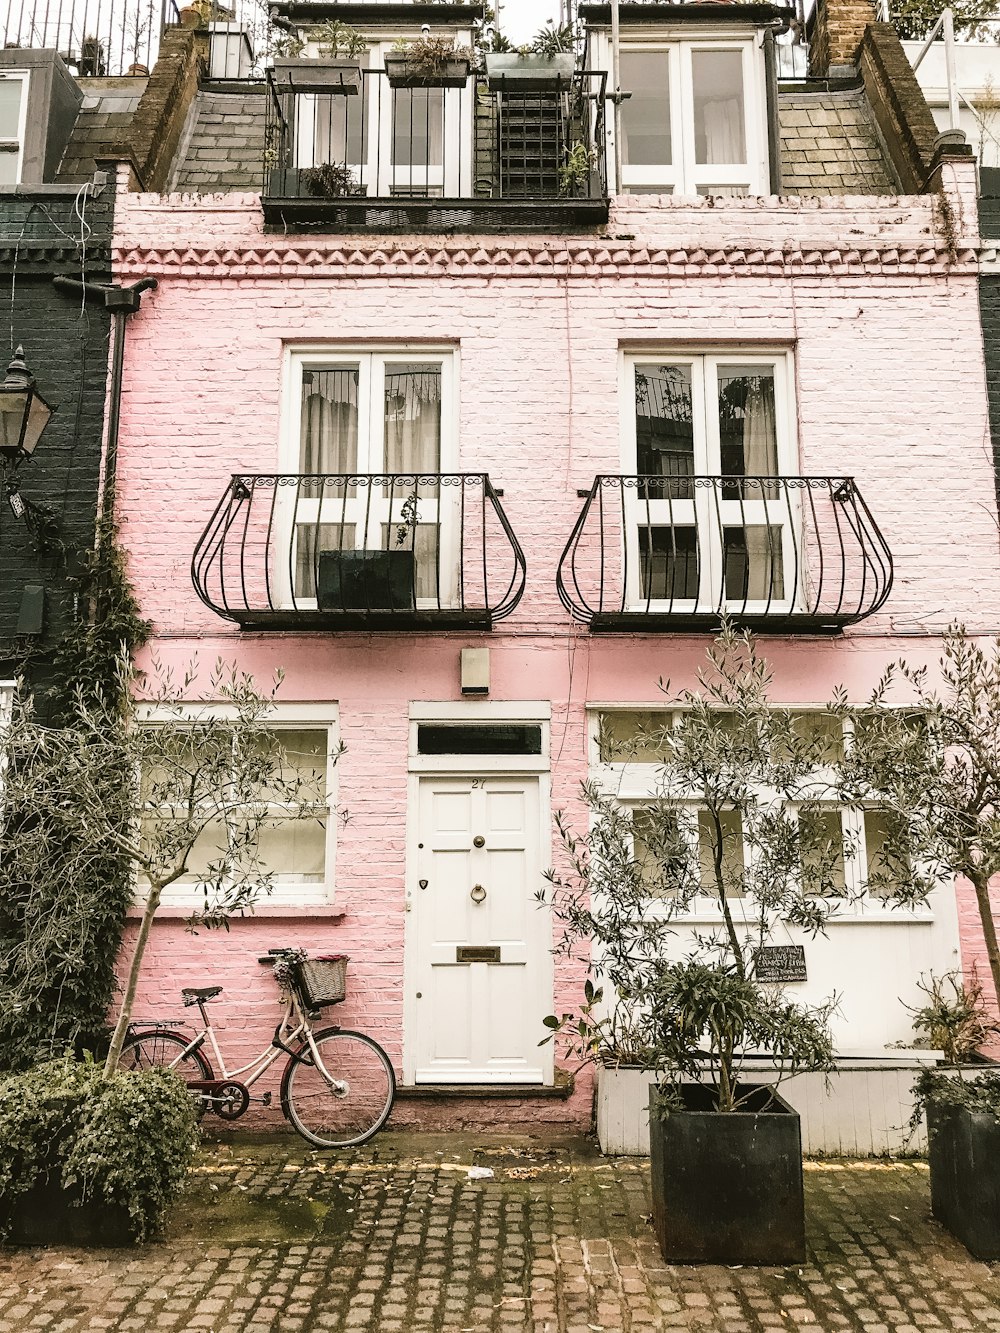 Bicicleta al lado de la pared rosa